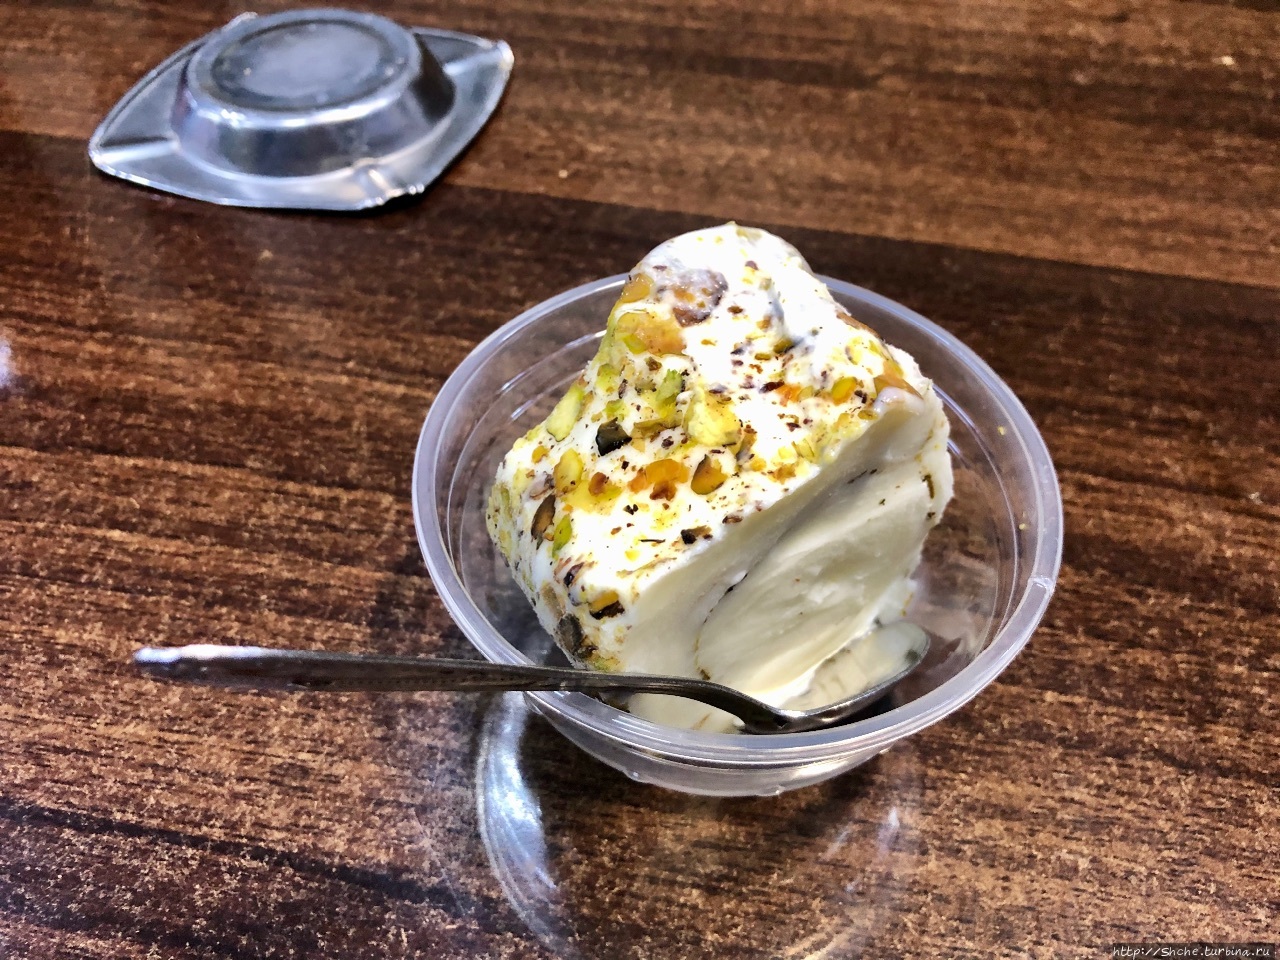 Кафе-мороженое «Бакдаш» / Bakdash (ice cream parlor)